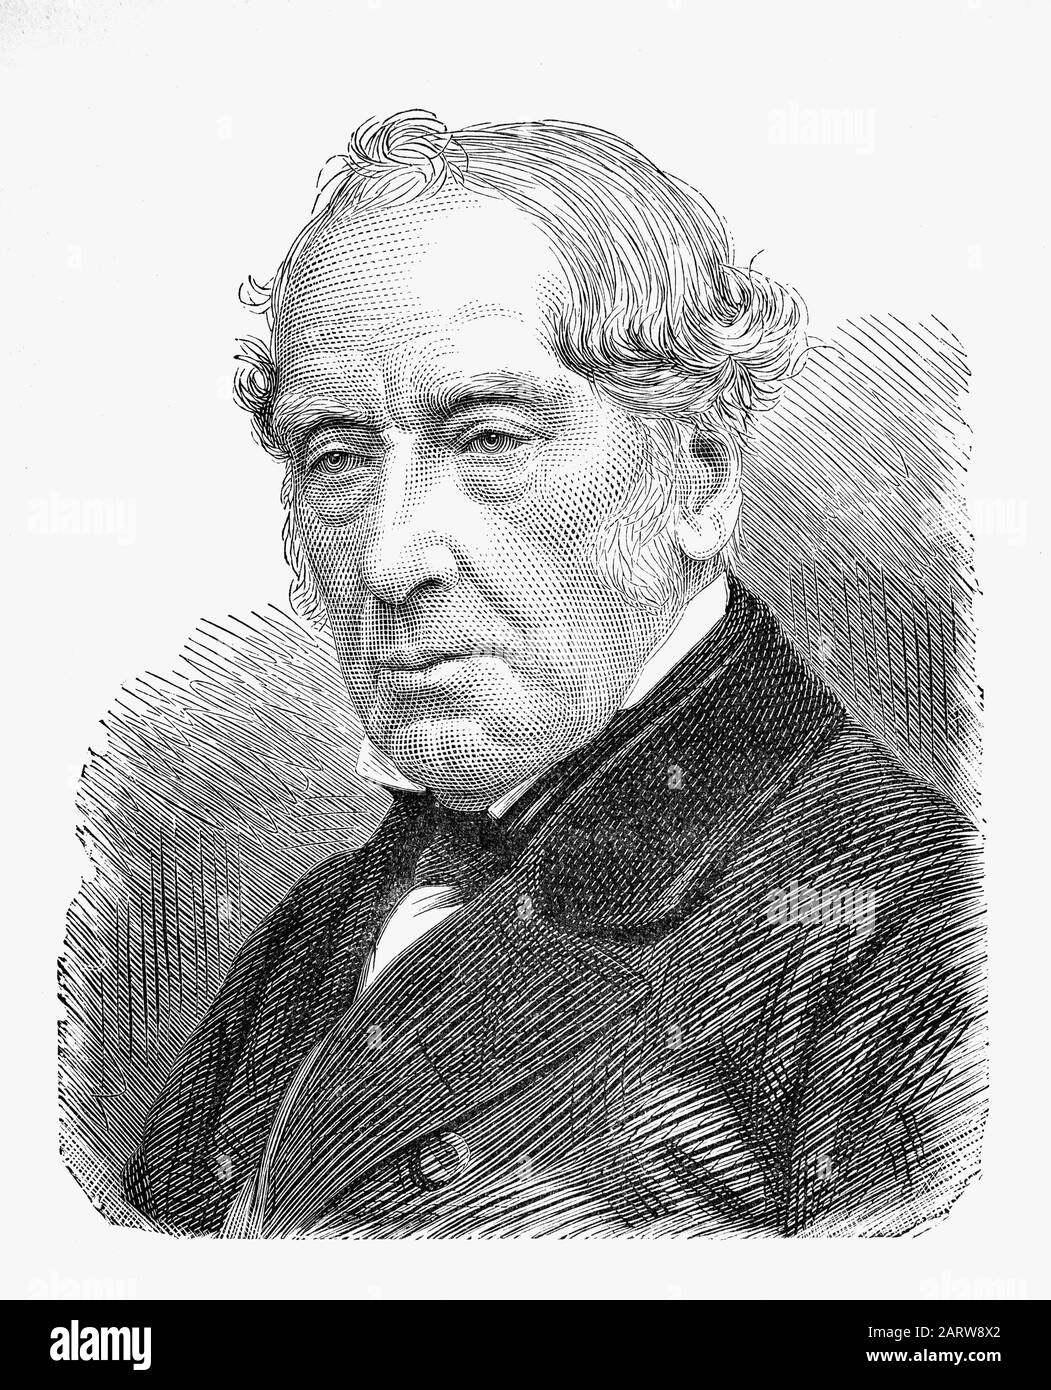 Sir William Fairbairn (1789-1874) è stato un ingegnere civile scozzese, ingegnere strutturale e costruttore navale che successe a George Stephenson e Robert Stephenson per diventare il terzo presidente dell'Istituto degli ingegneri meccanici nel 1854. Foto Stock